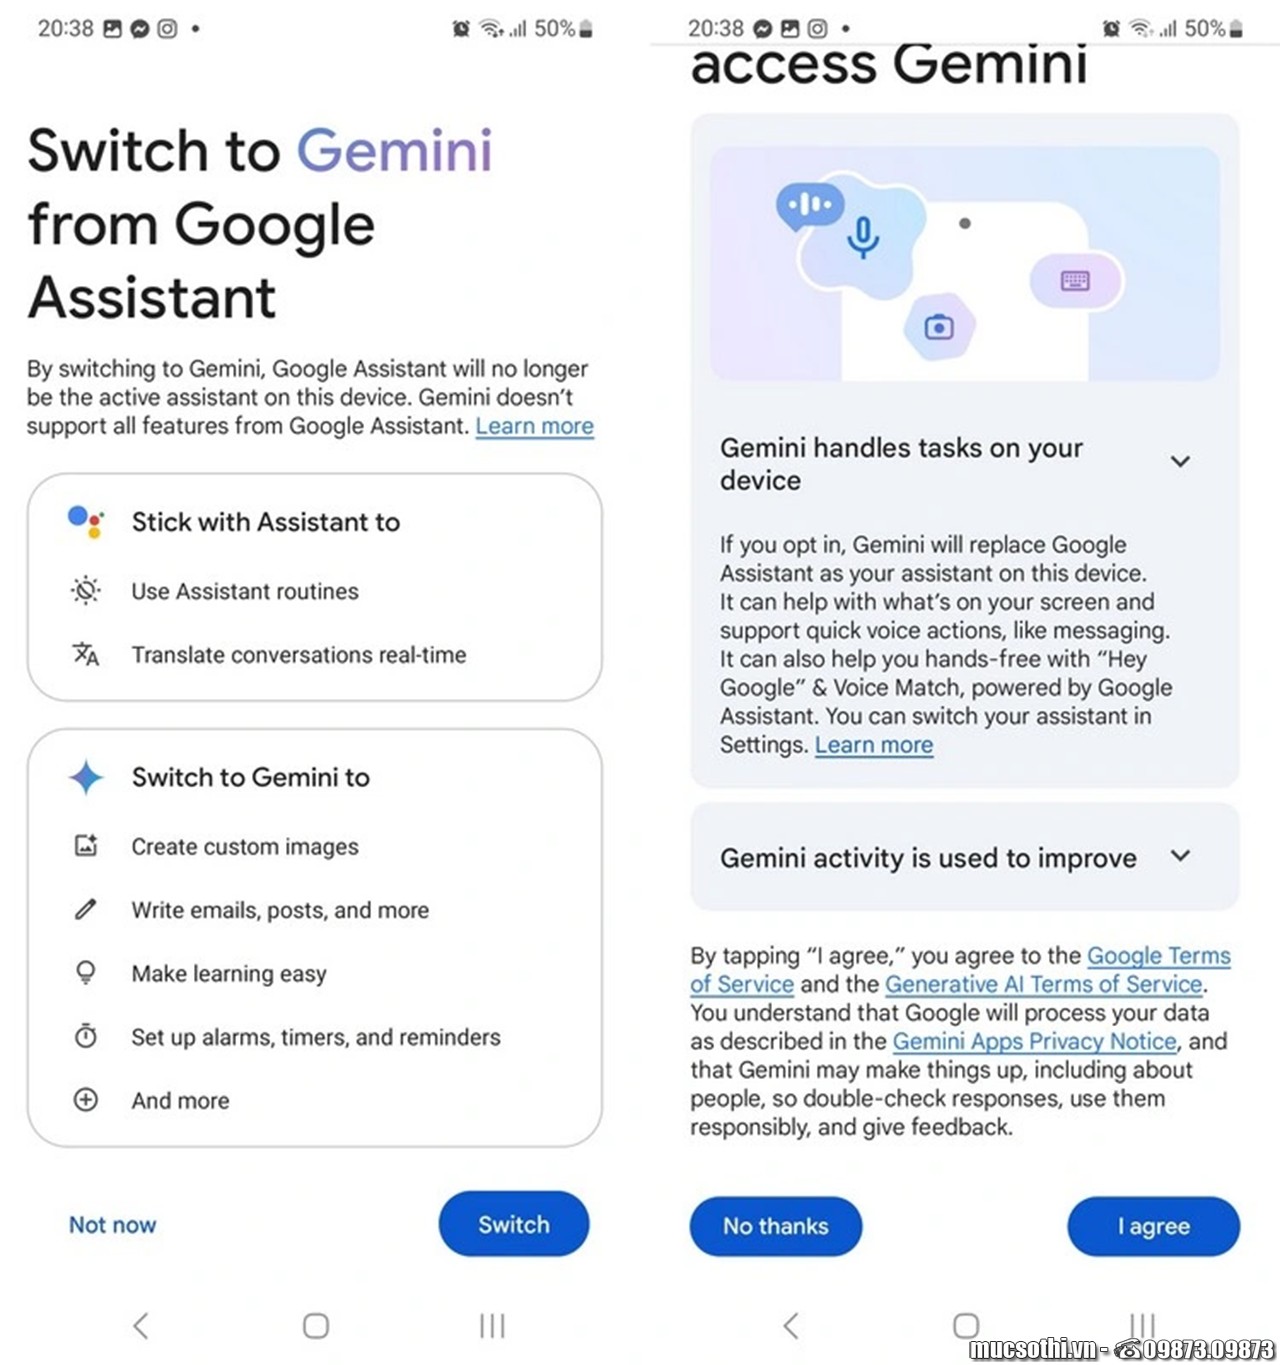 Hướng dẫn cài đặt và sử dụng chatbot AI Google Gemini trên smartphone Android tại Việt Nam - mucsothi.com.vn